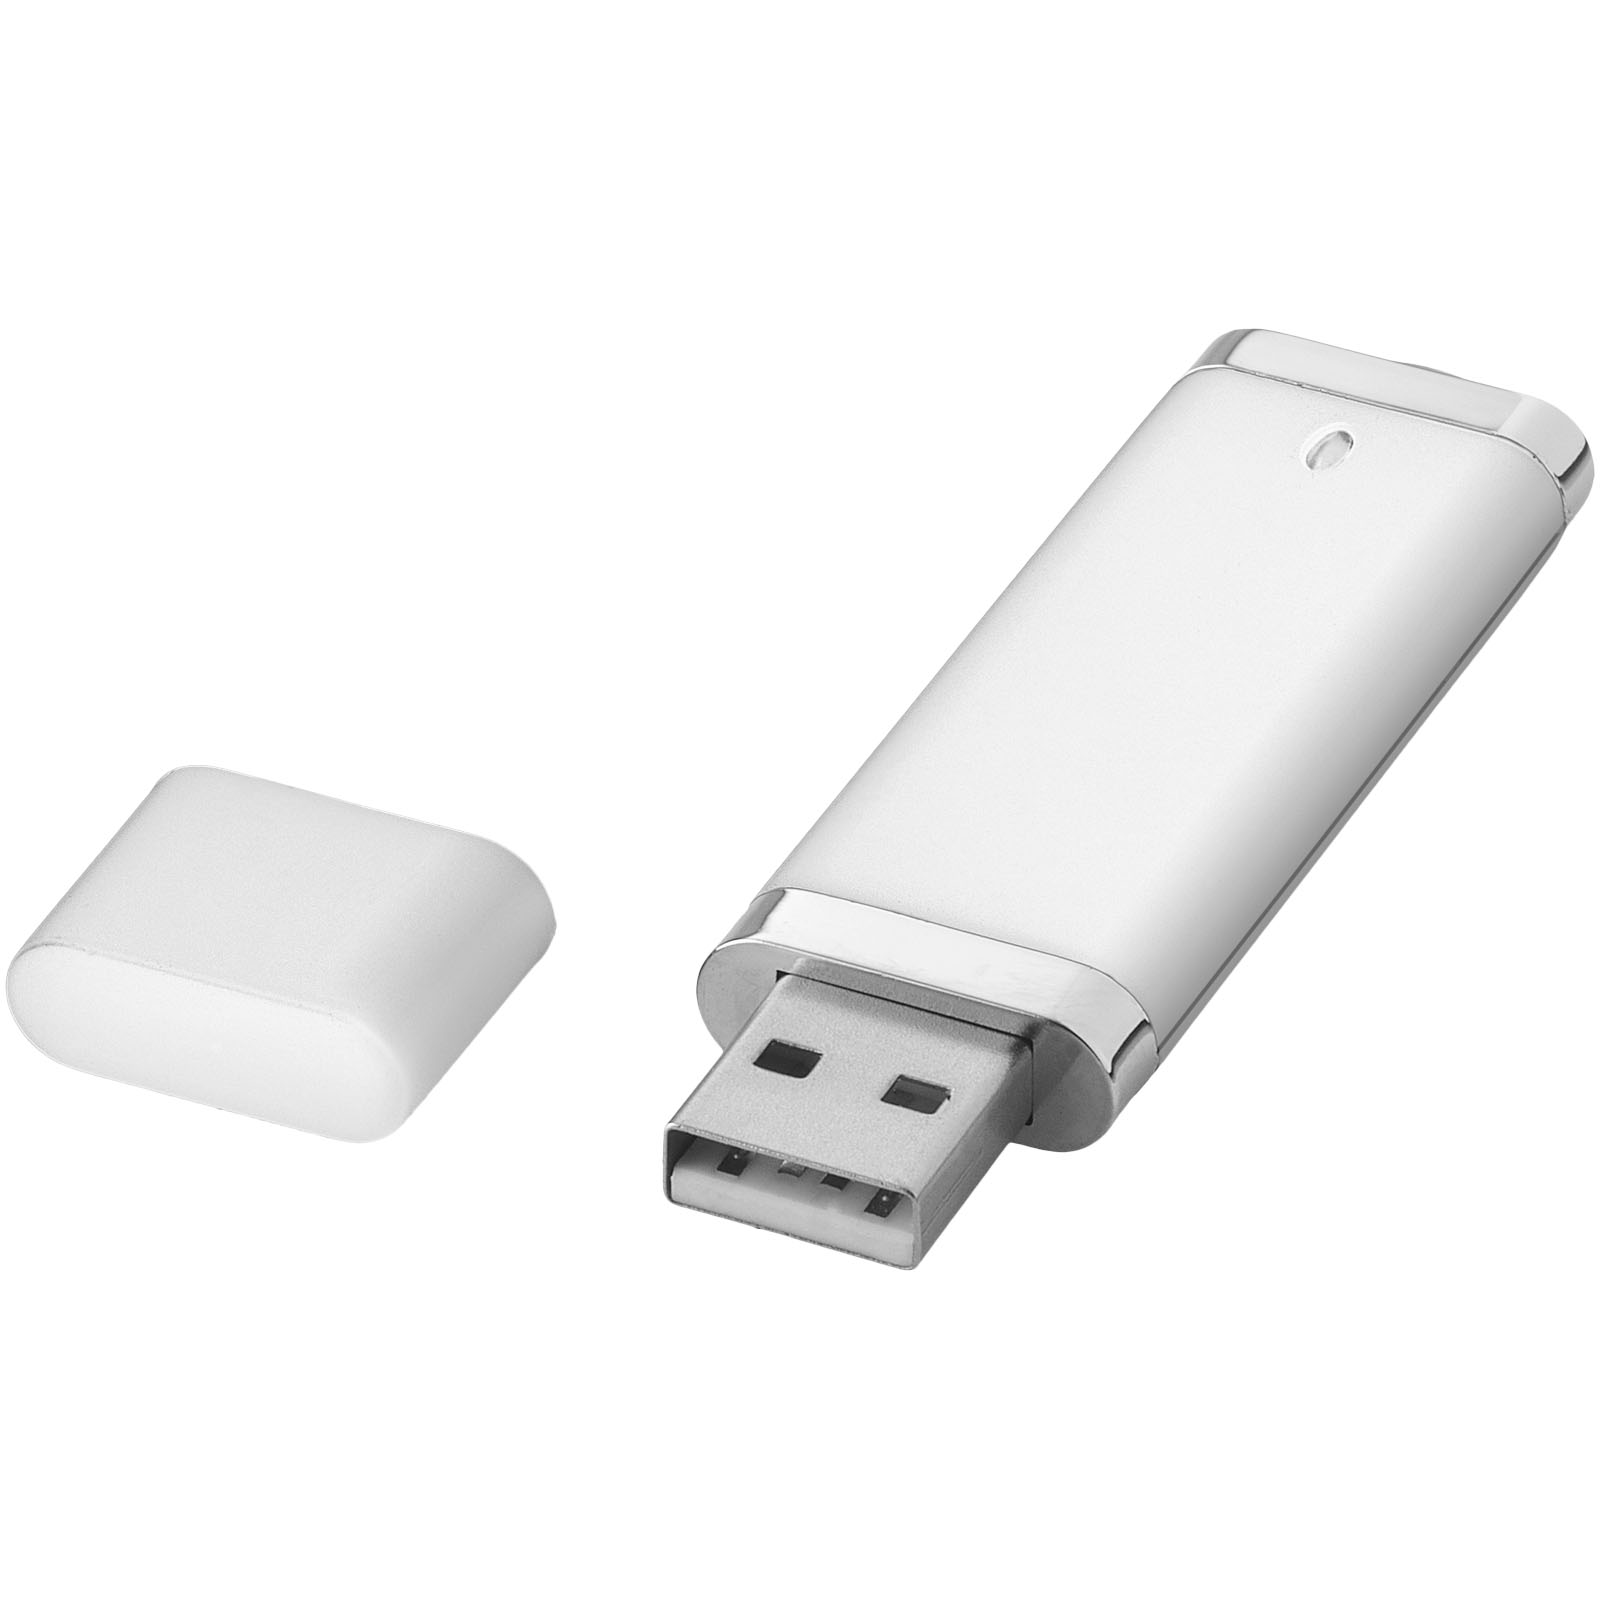 USB Flash Drives - Even 2GB USB flash drive